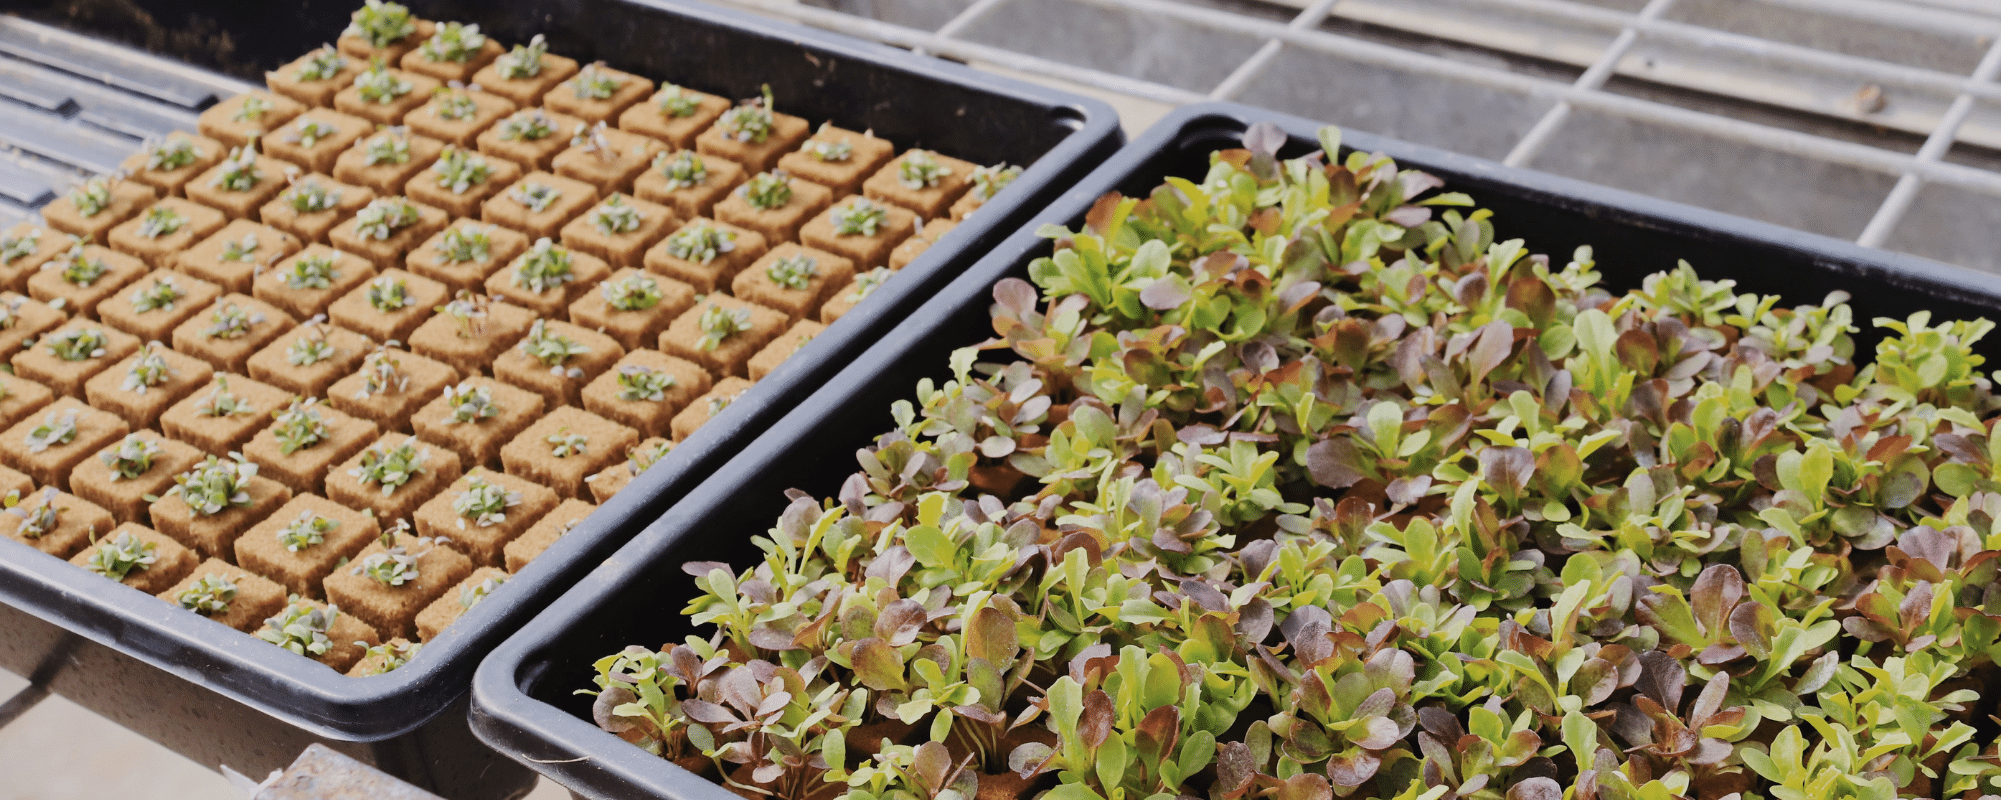 seedlings in plastic box